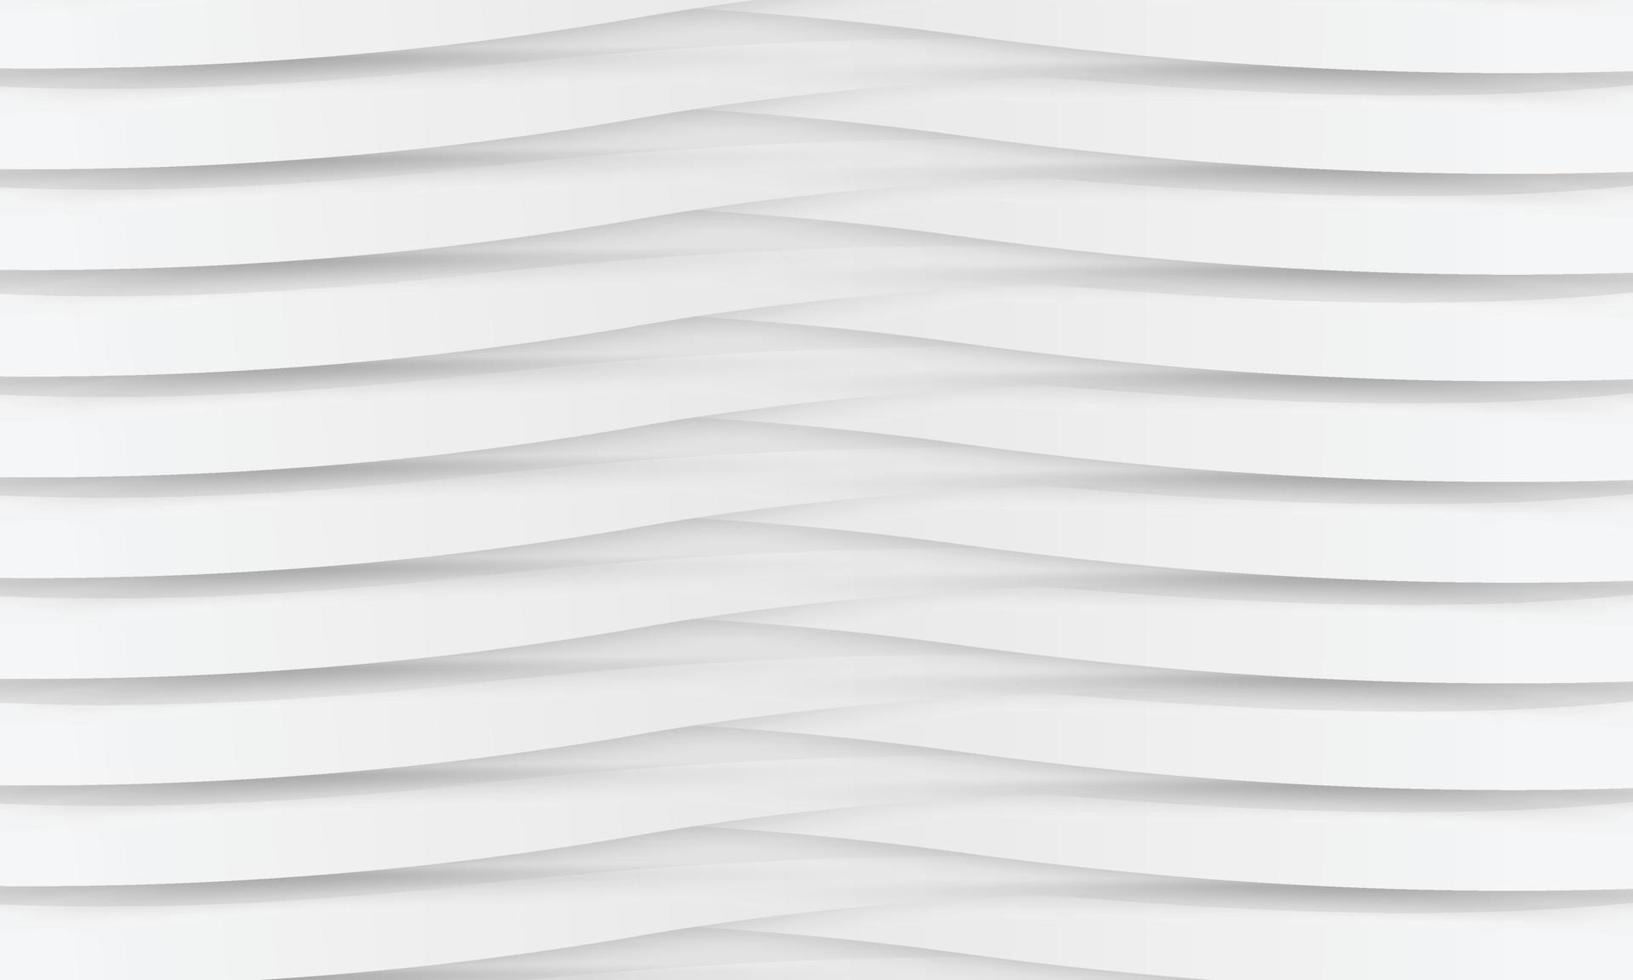 weiße elegante Linien abstraktes Hintergrunddesign. moderne White-Wave-Meta-Zusammenfassungs-Hintergrundsammlung vektor